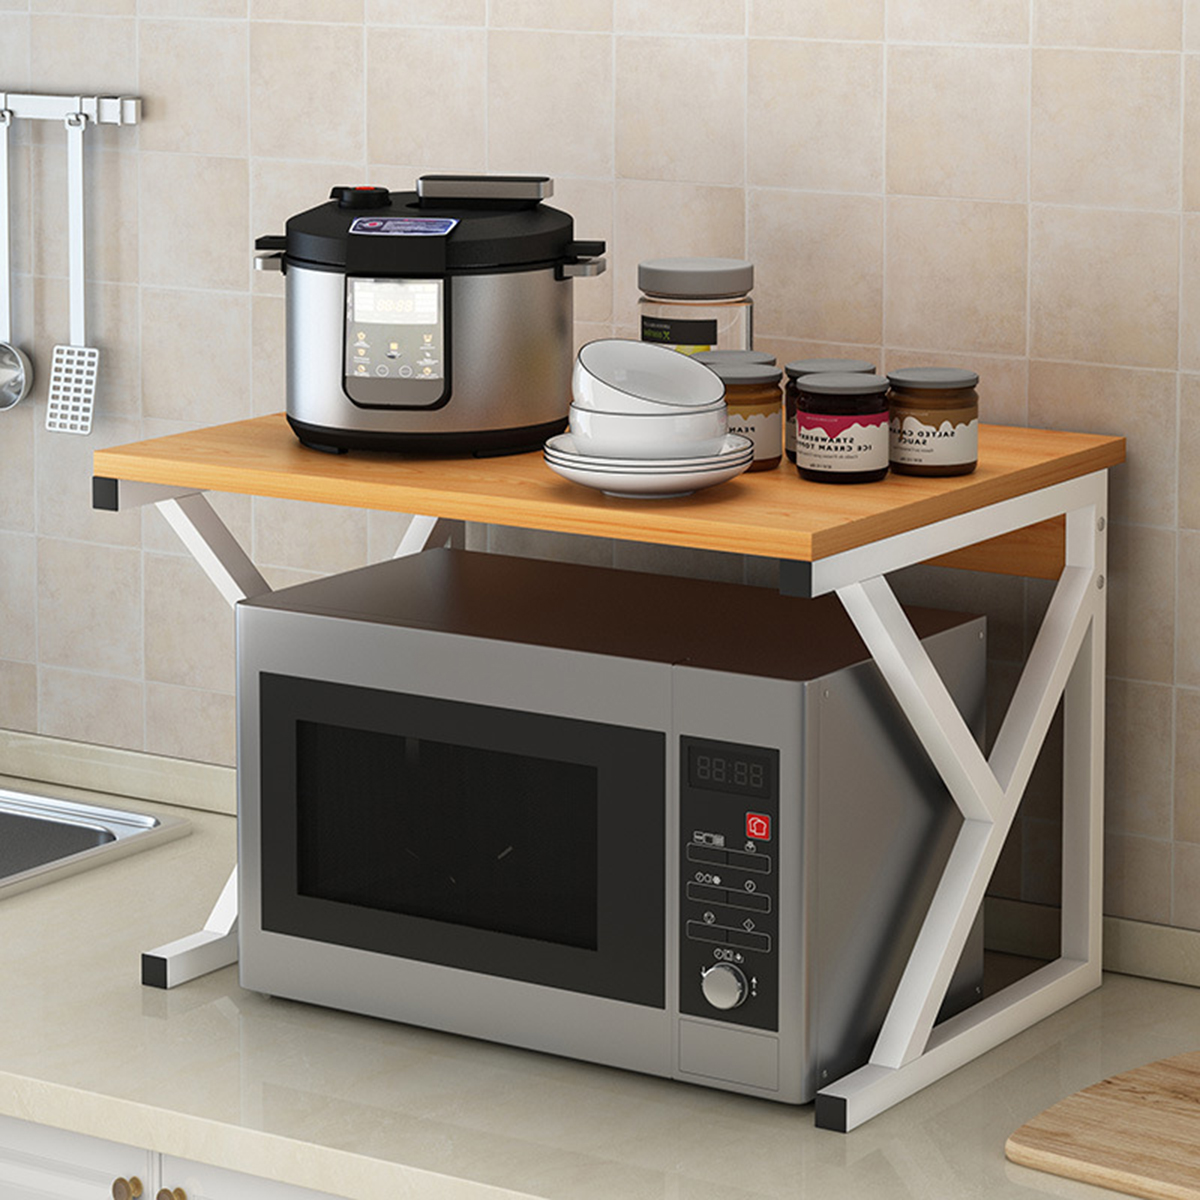 Microwave Oven Rack Kitchen Baker Stand Storage Shelf Kitchen Desktop Space Saving Organizer 11